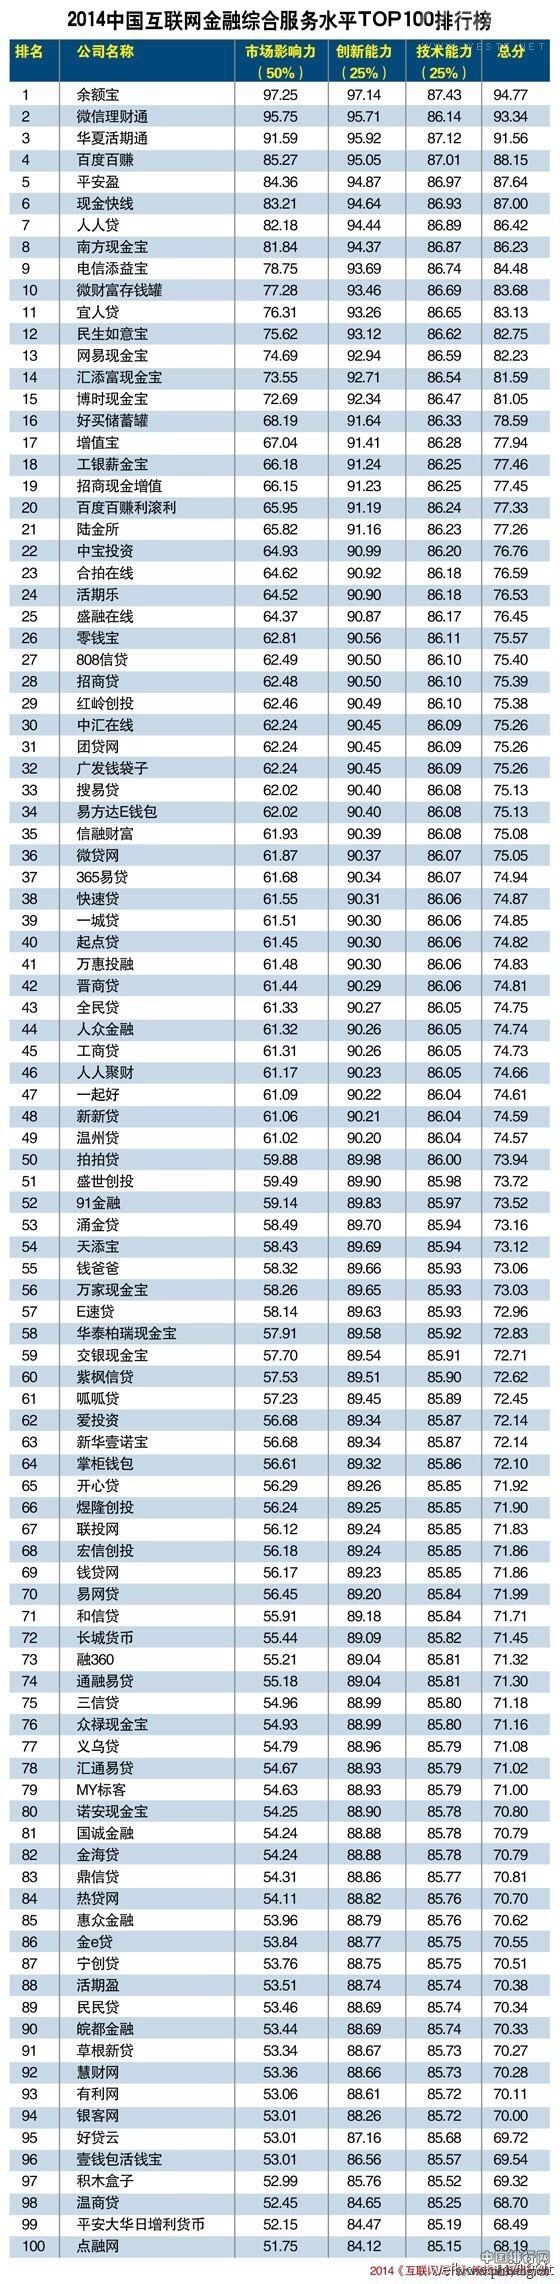 2014中国互联网金融综合服务水平排行榜TOP 100